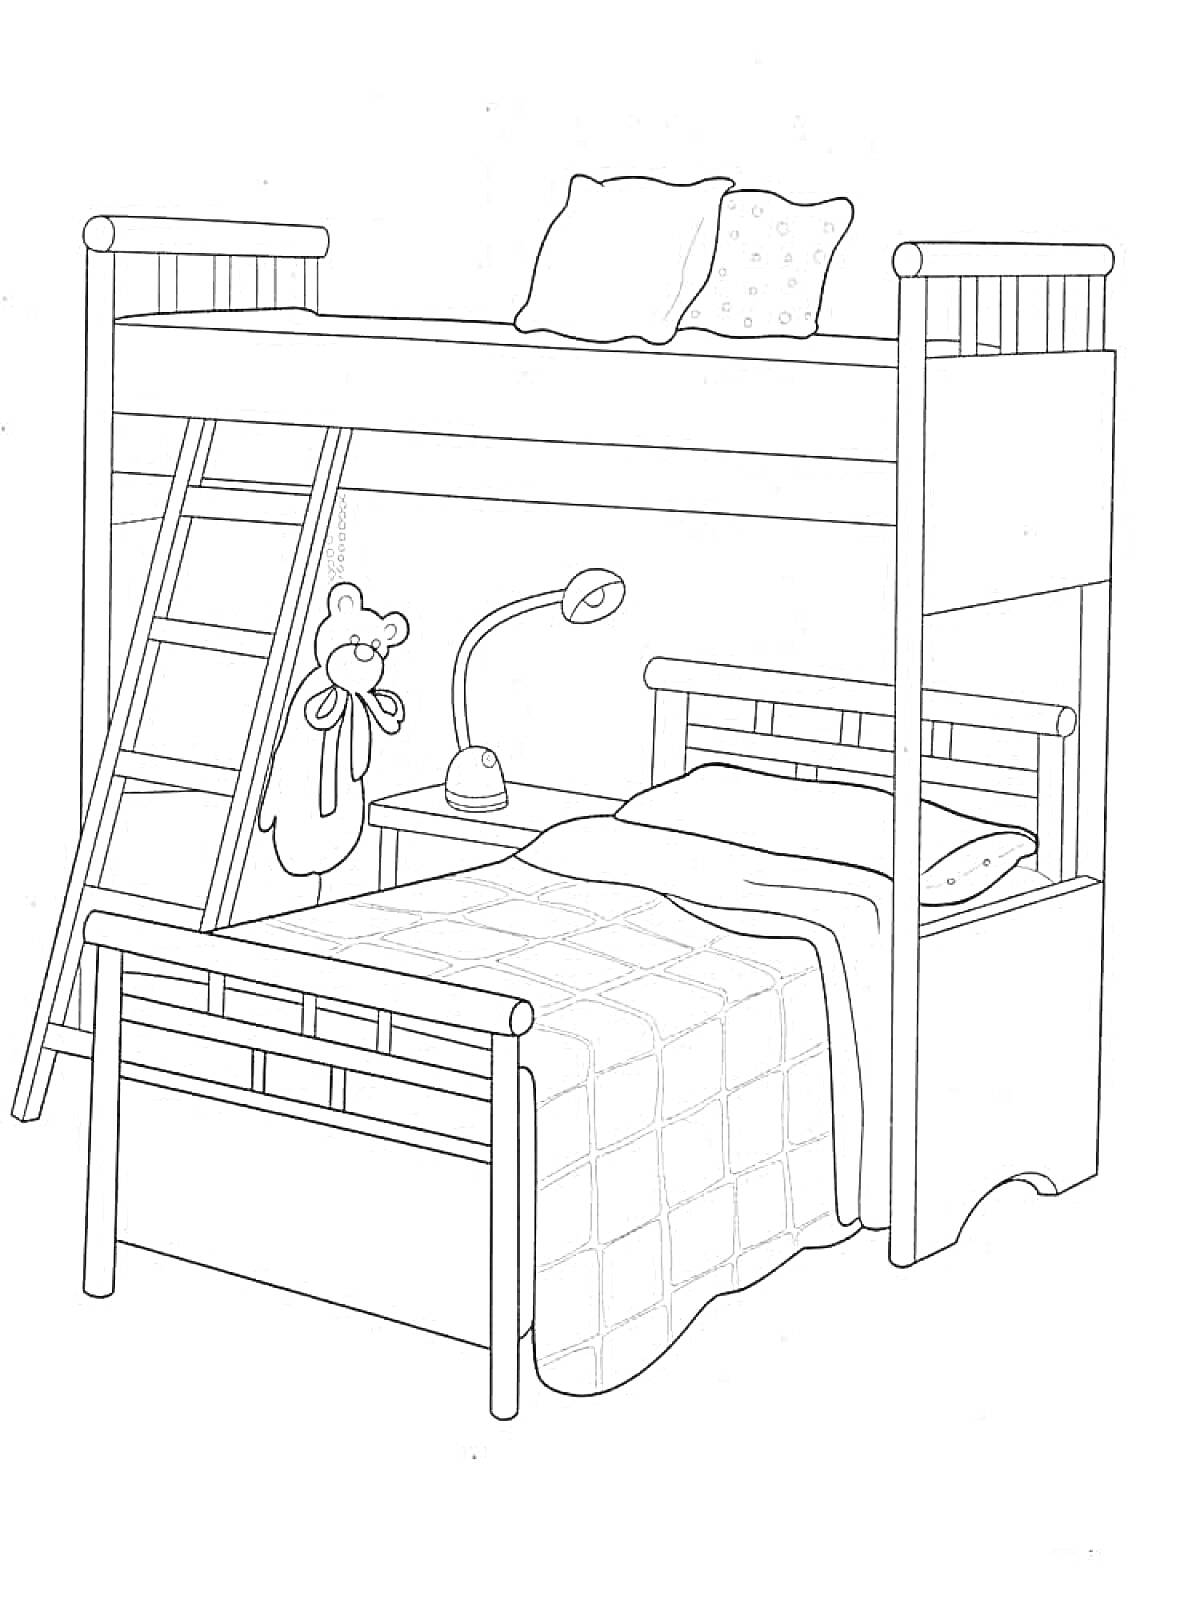 Двухъярусная кровать с лестницей, столом, лампой, двумя подушками и игрушкой